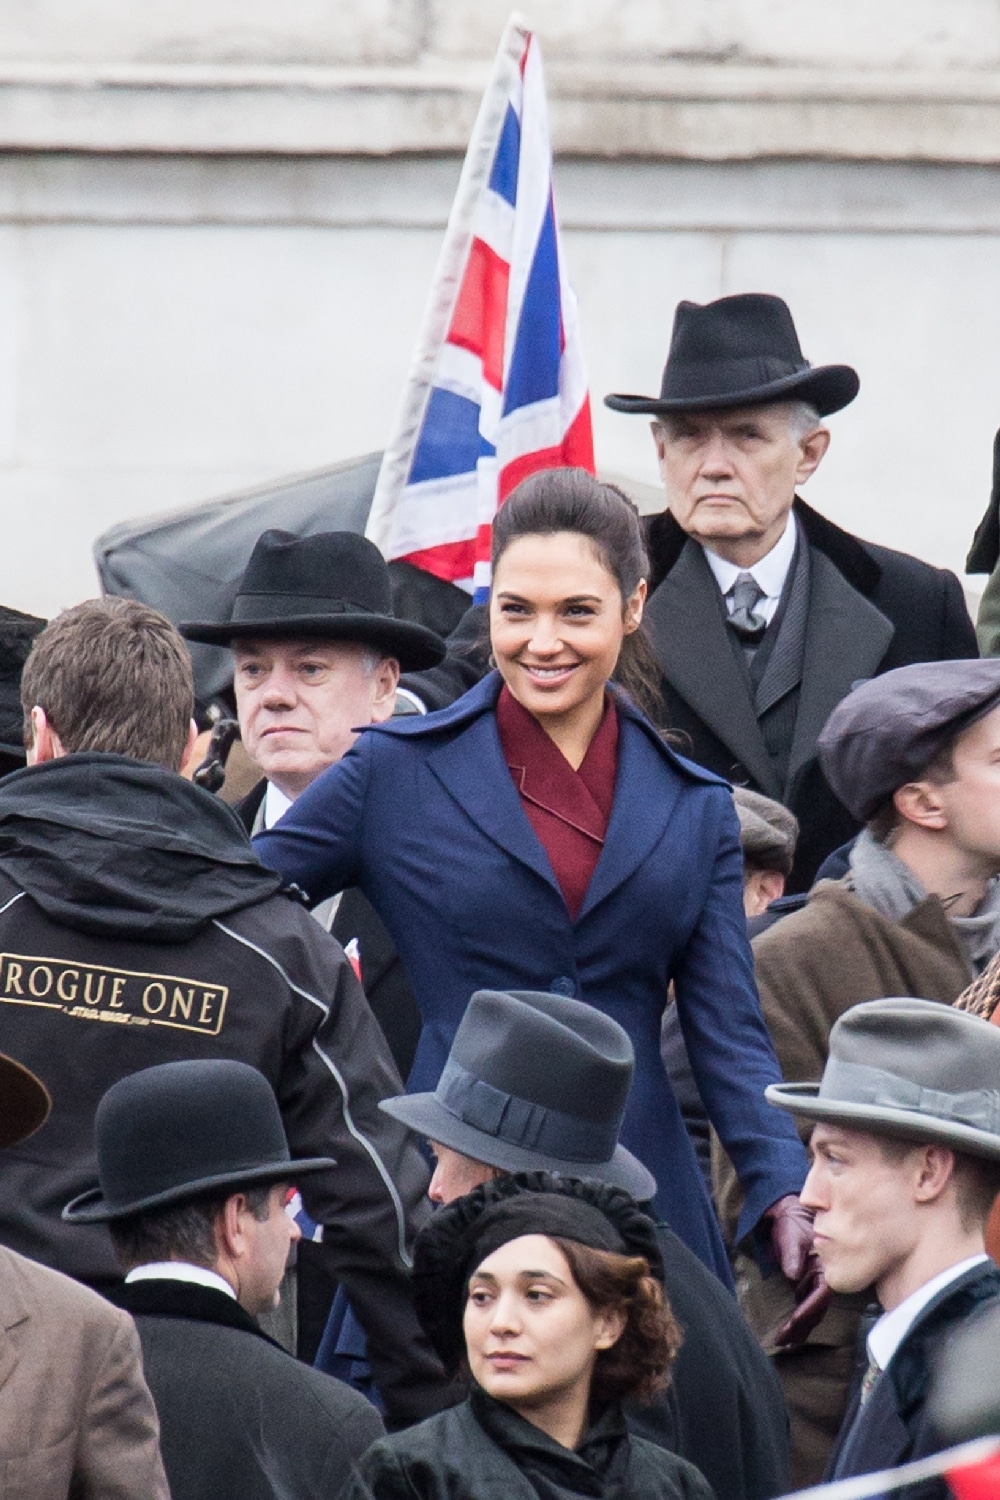 ’Wonder Woman’ filming in Trafalgar Square